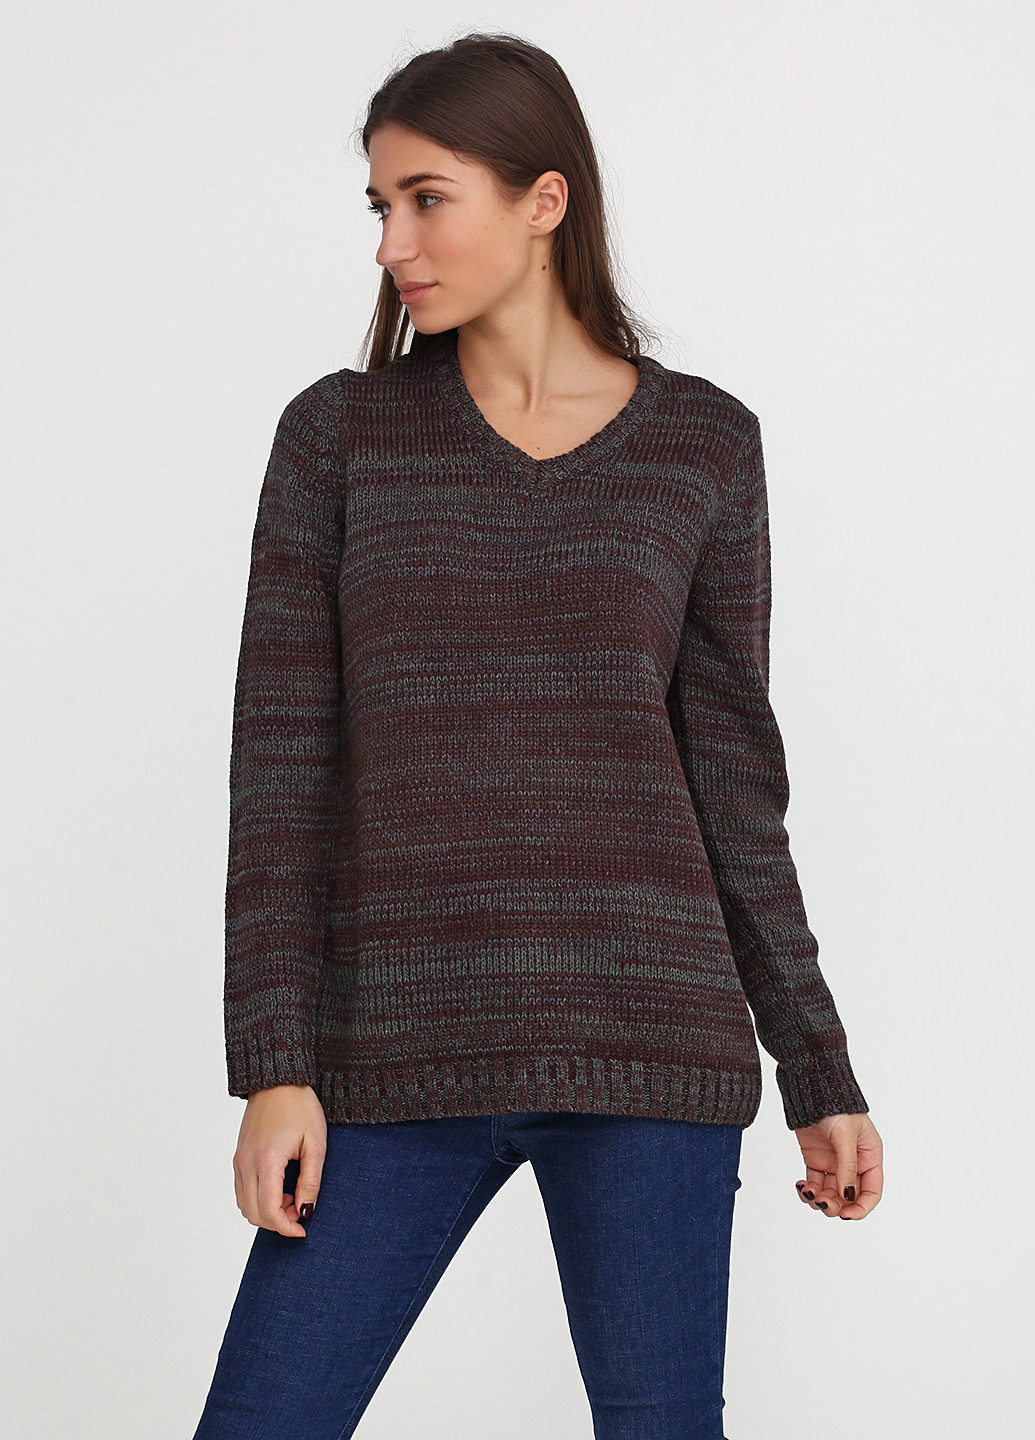 Комбинированный демисезонный пуловер пуловер Long Island